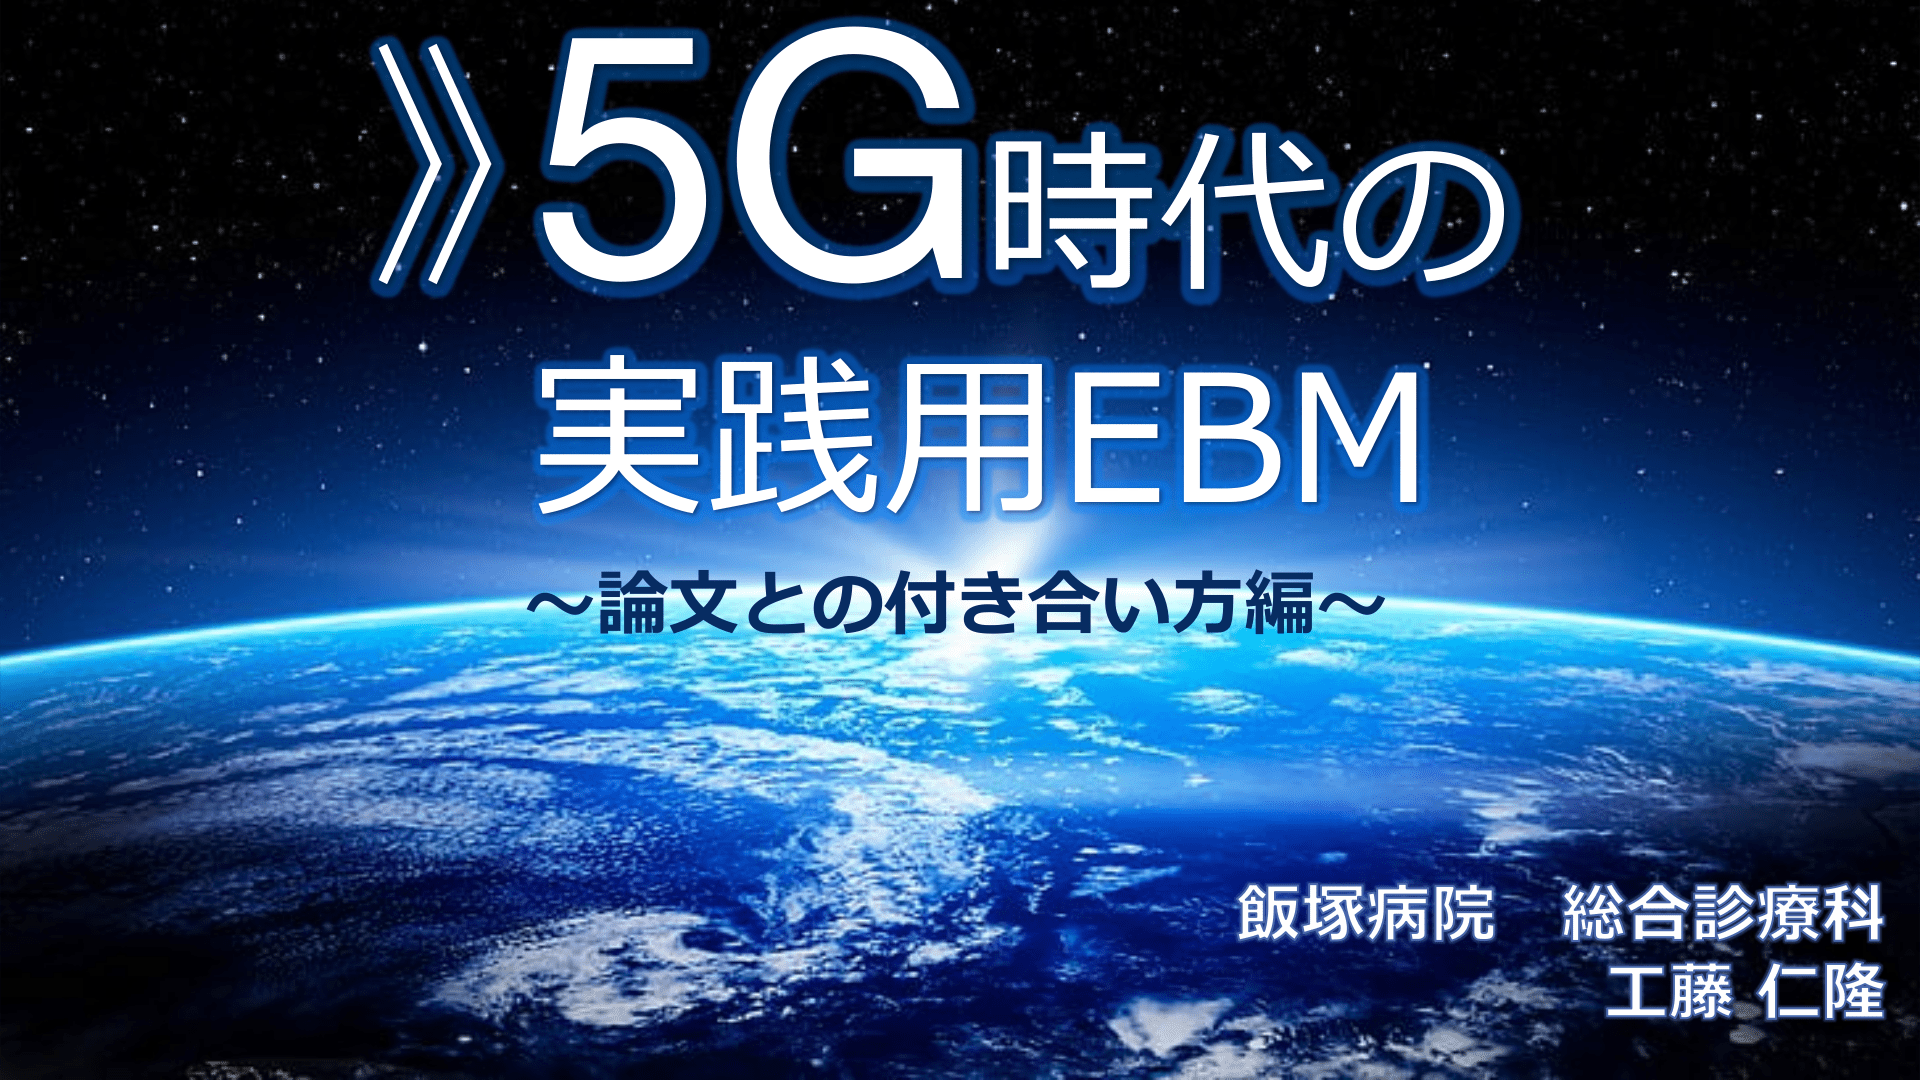  5G時代の 実践用EBM〜論文との付き合い方編〜 L1.png